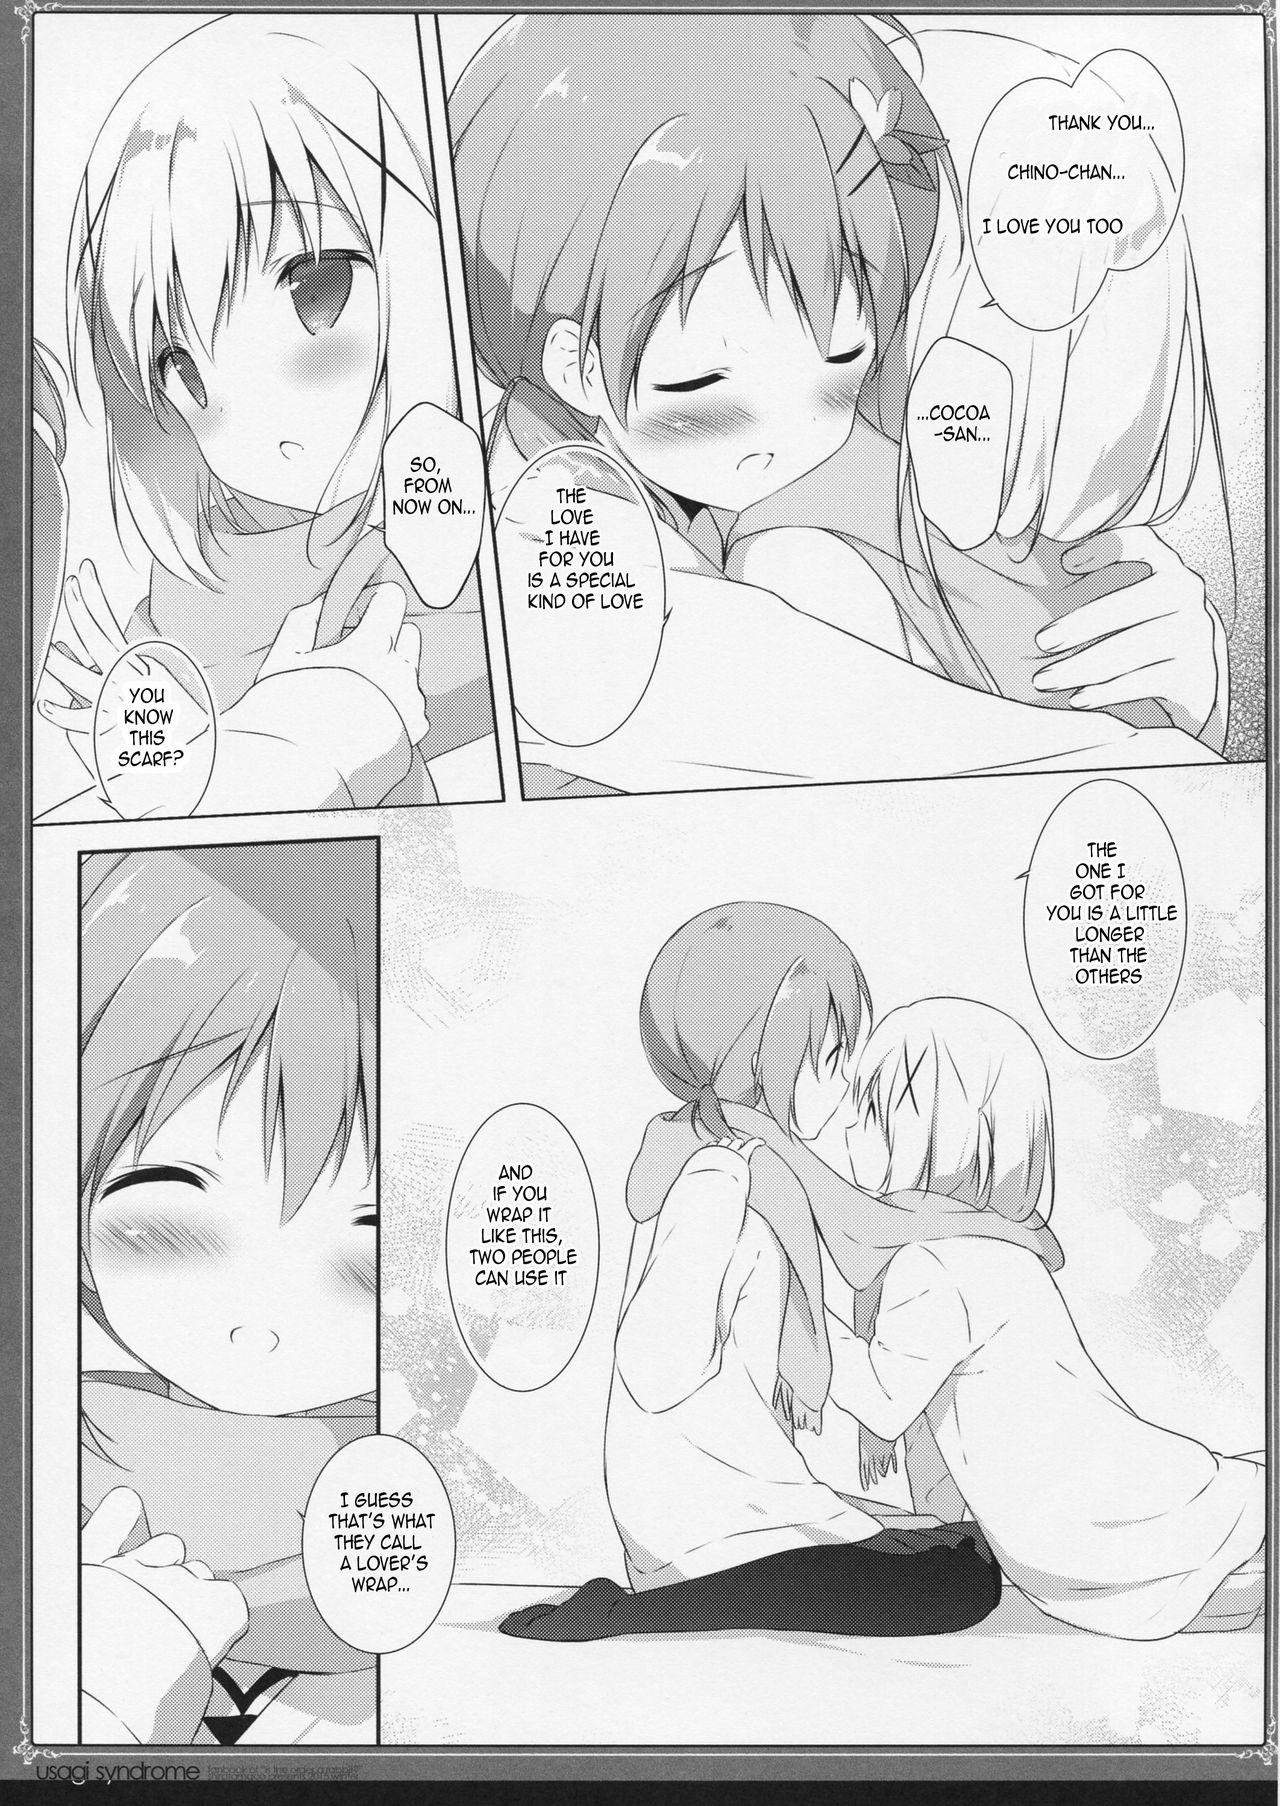 Furry Usagi Syndrome 2 - Gochuumon wa usagi desu ka Ex Girlfriends - Page 12